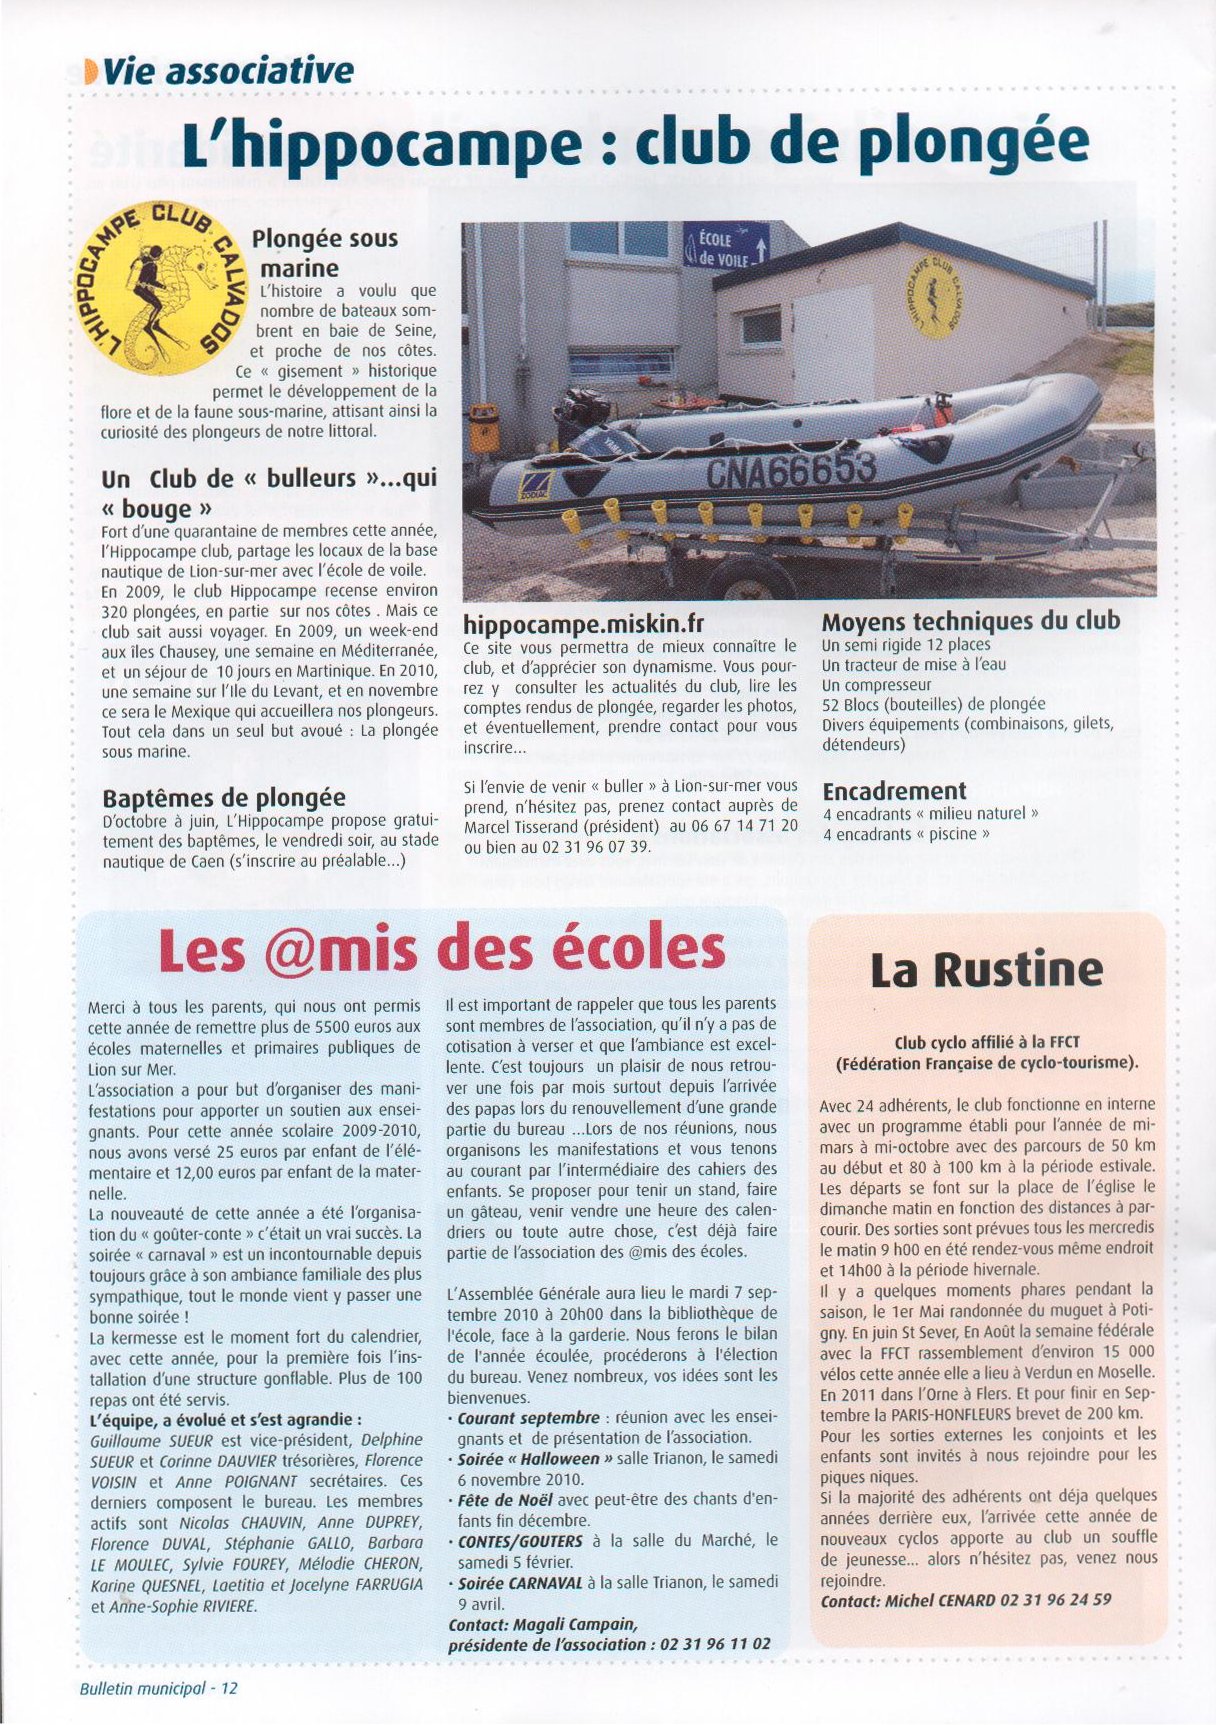 Lion-sur-mer ete 2010 (page 2).jpg